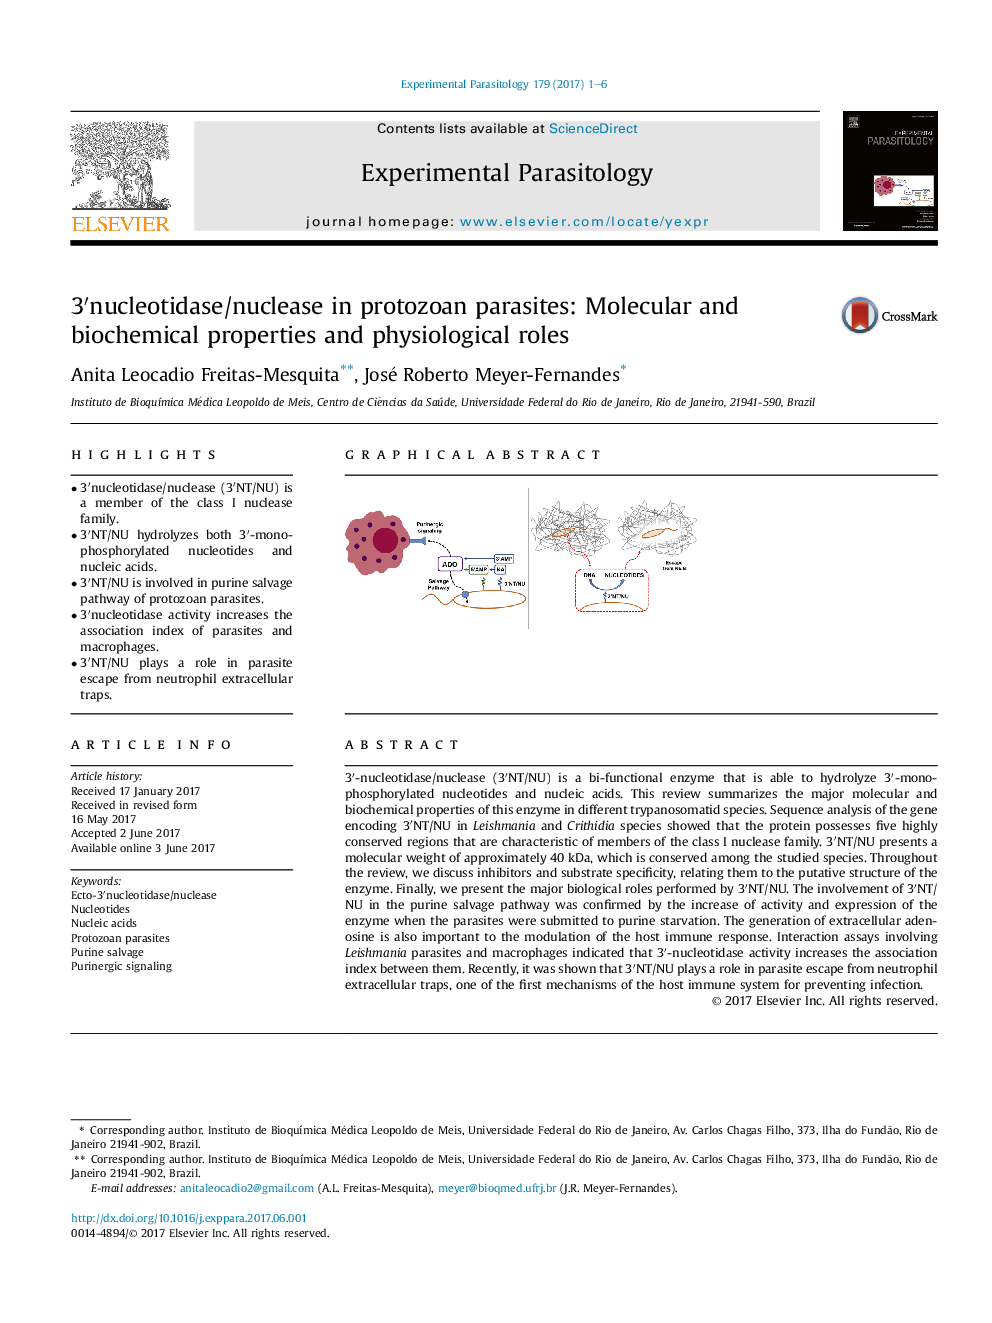 3â²nucleotidase/nuclease in protozoan parasites: Molecular and biochemical properties and physiological roles